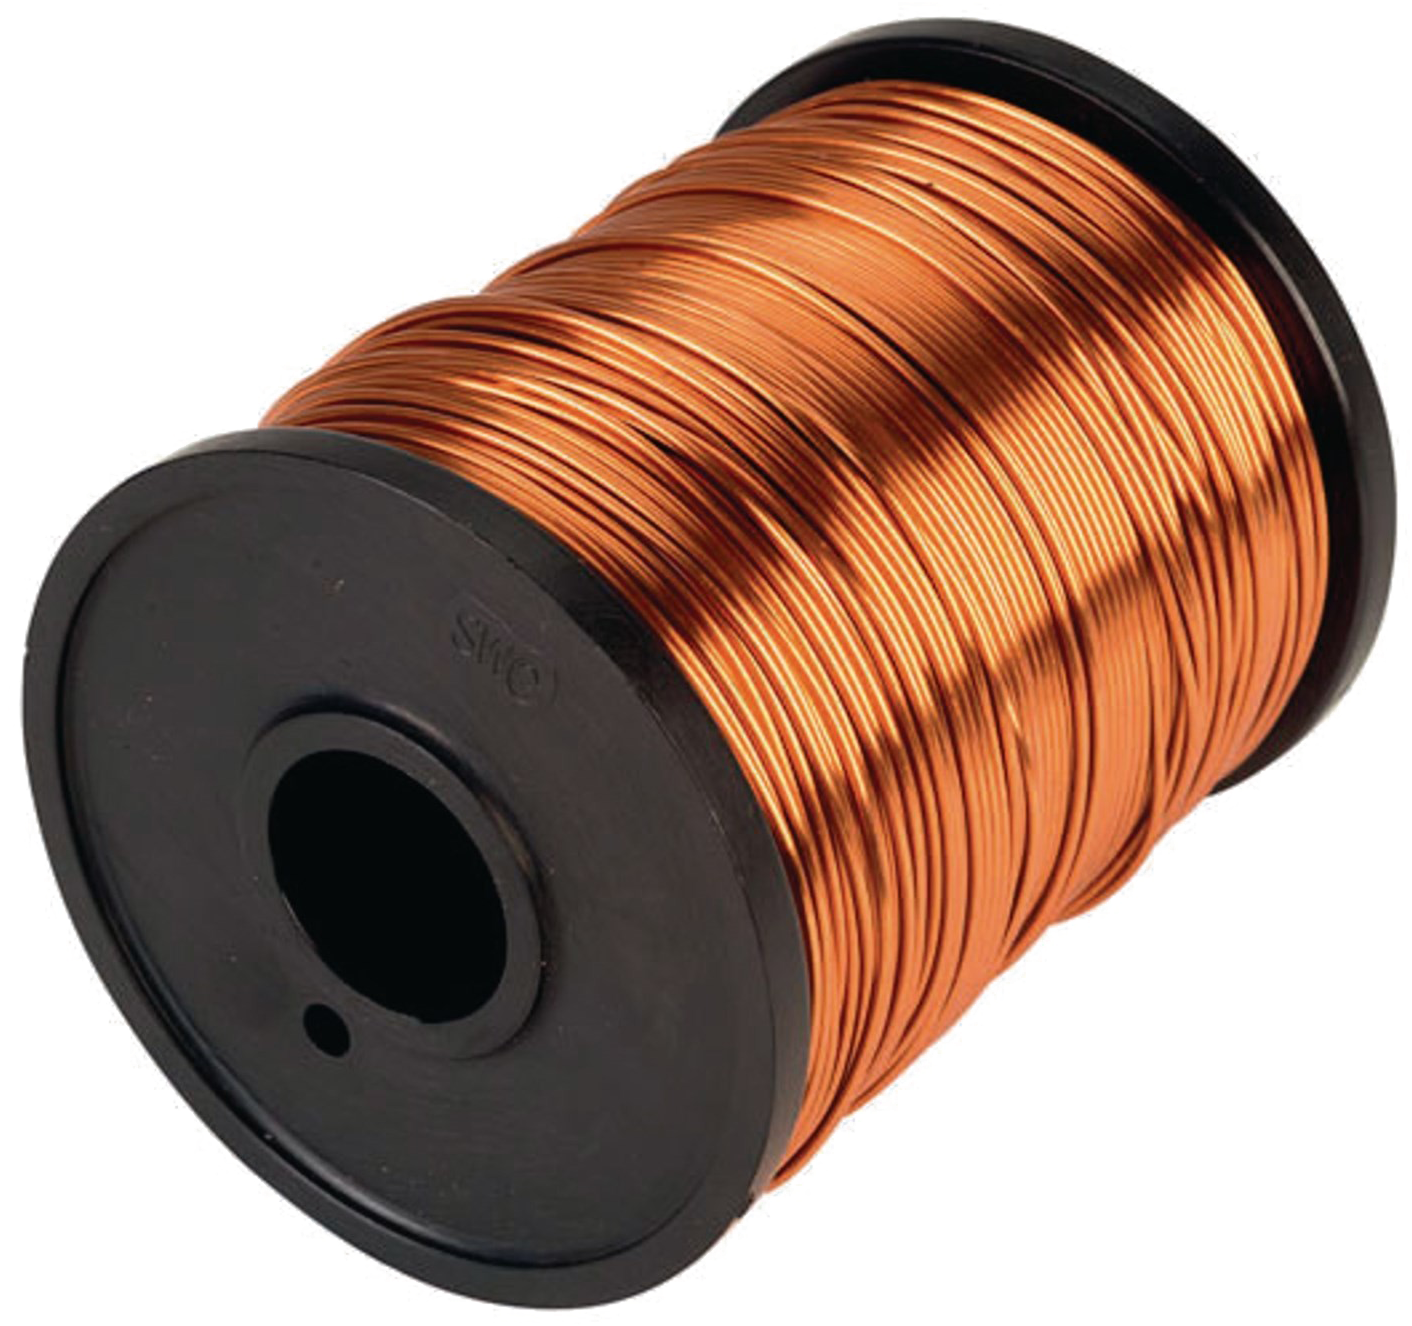 A Spool Of Copper Wire